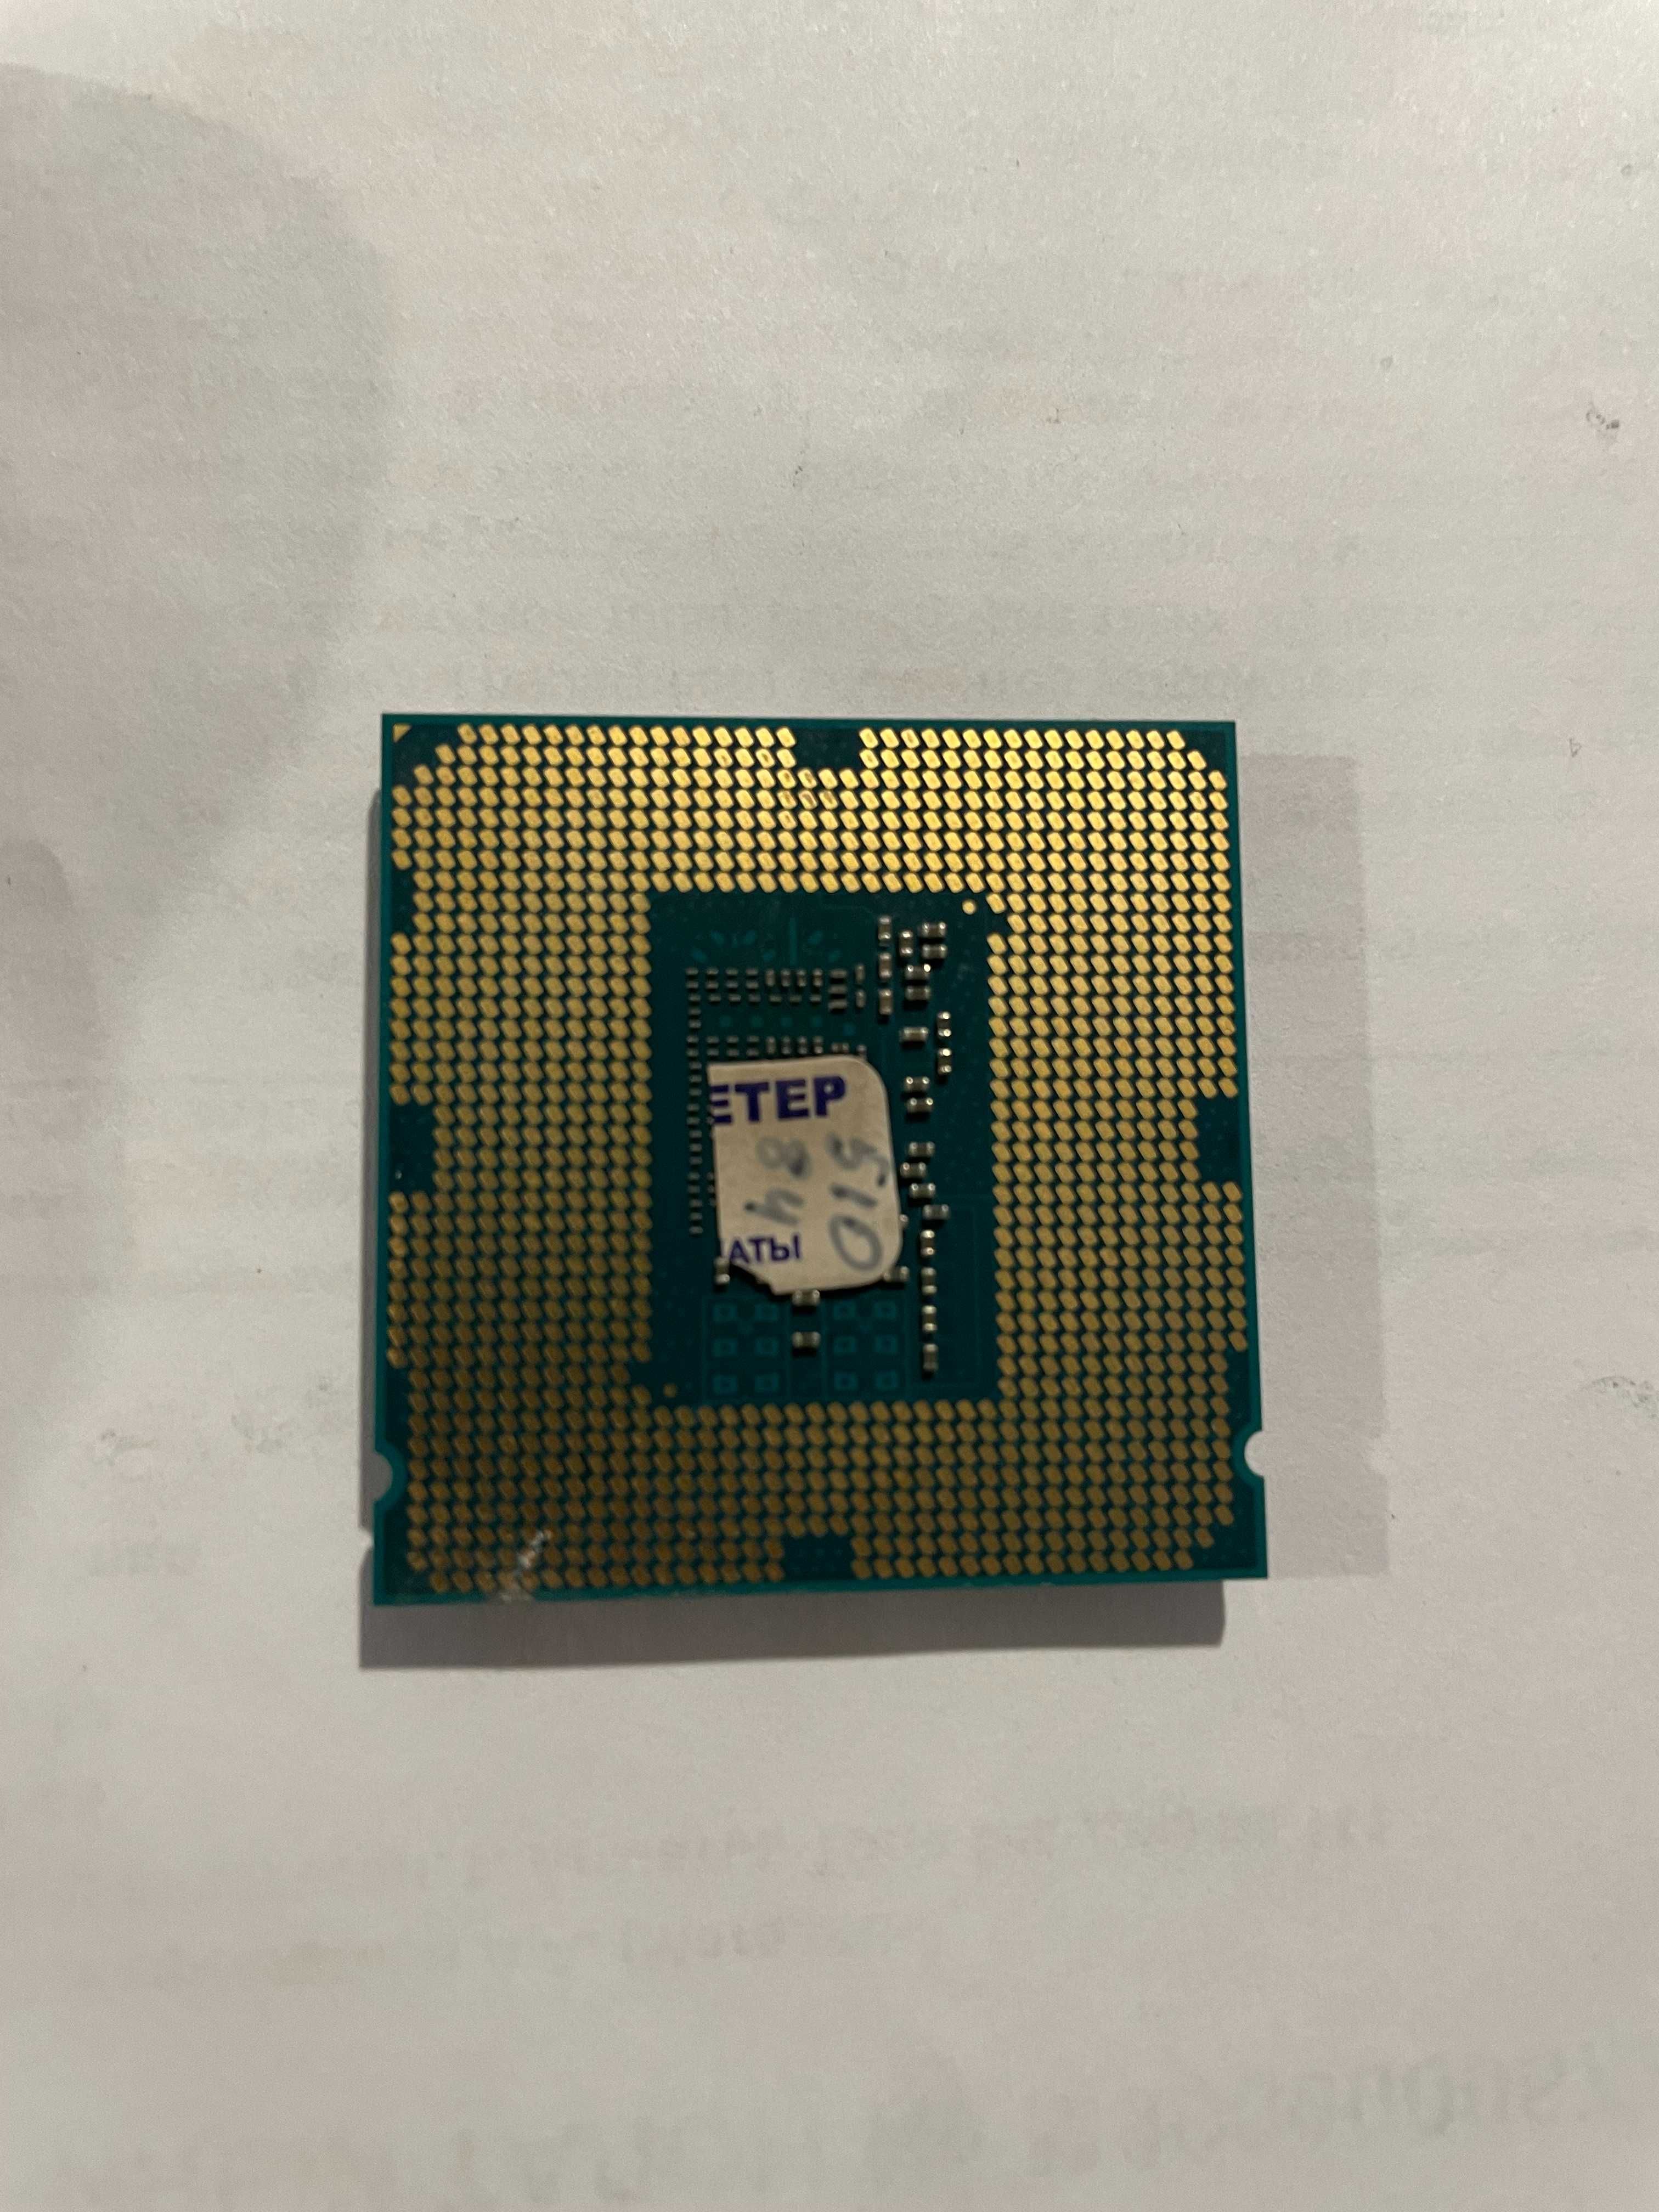 Процессор Intel core i5-4460